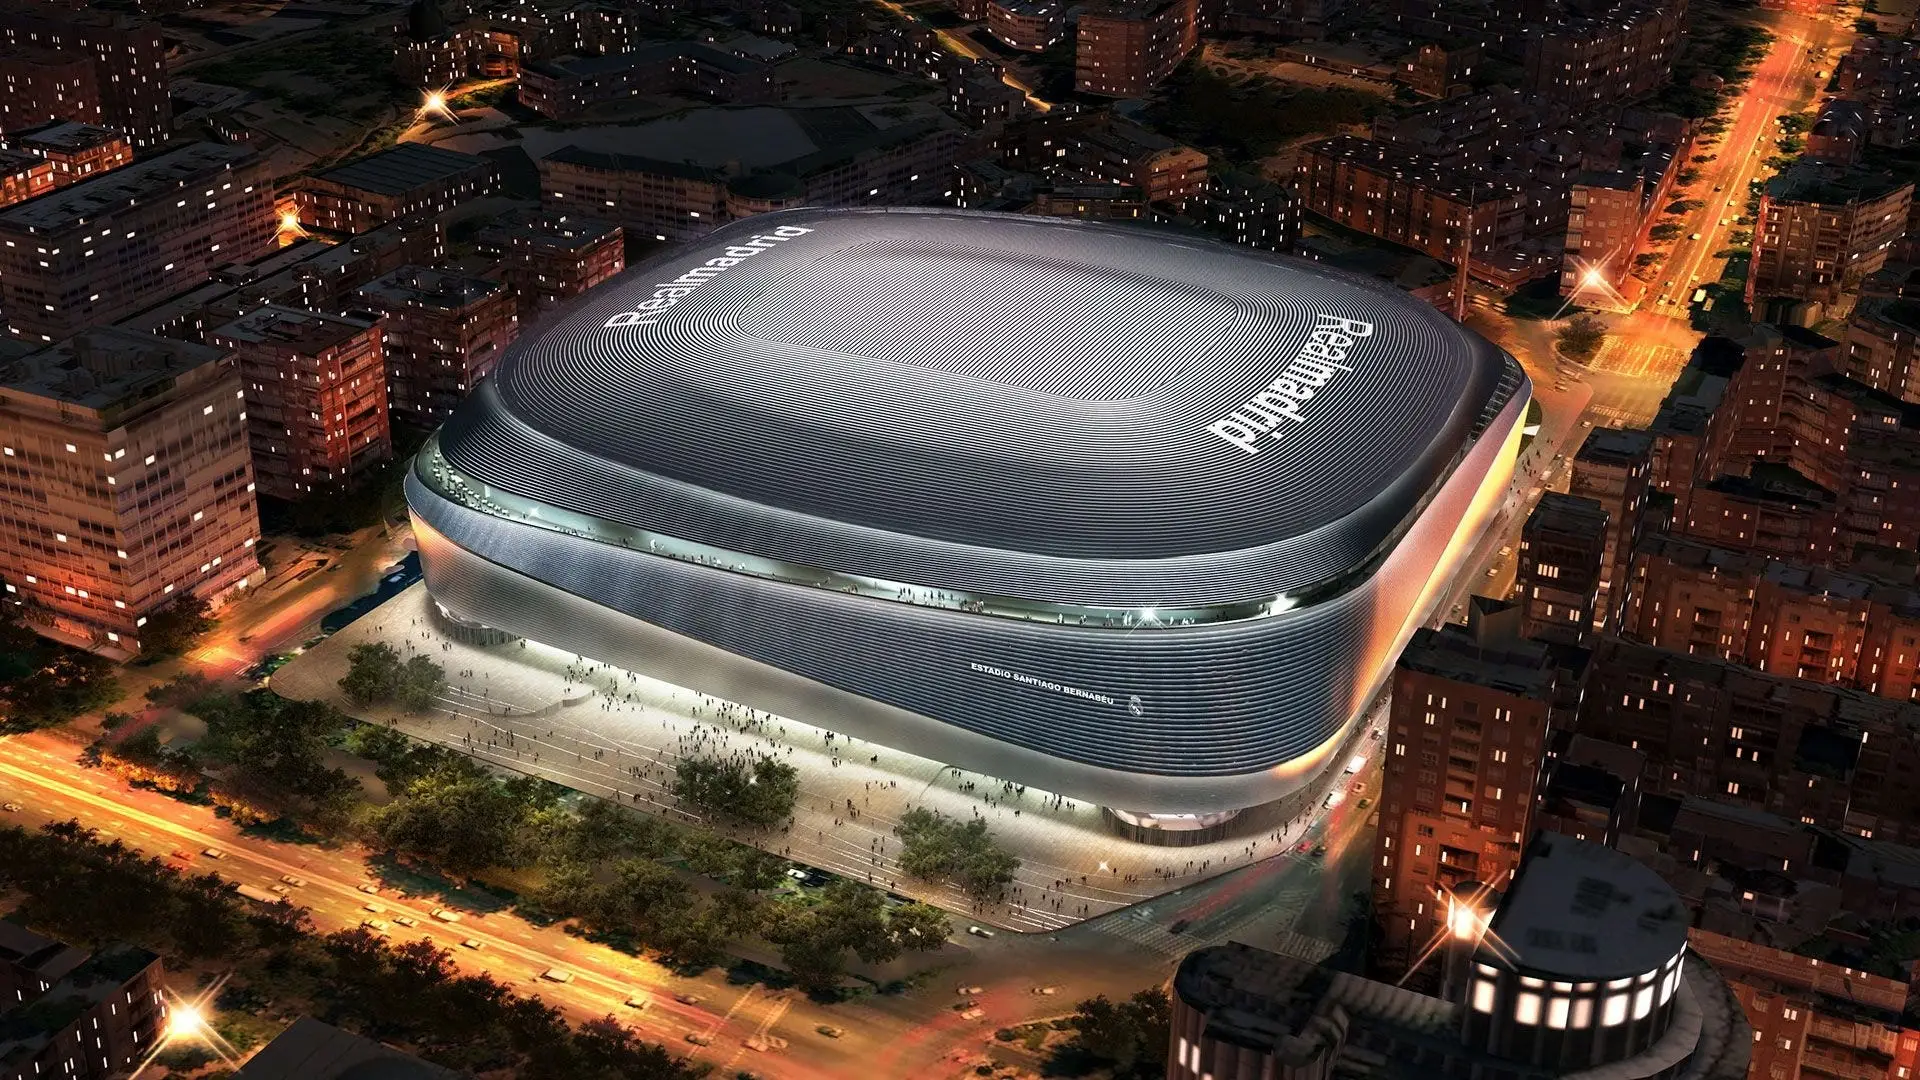 Sân vận động Santiago Bernabéu - Ngôi đền bóng đá huyền thoại của Tây Ban Nha